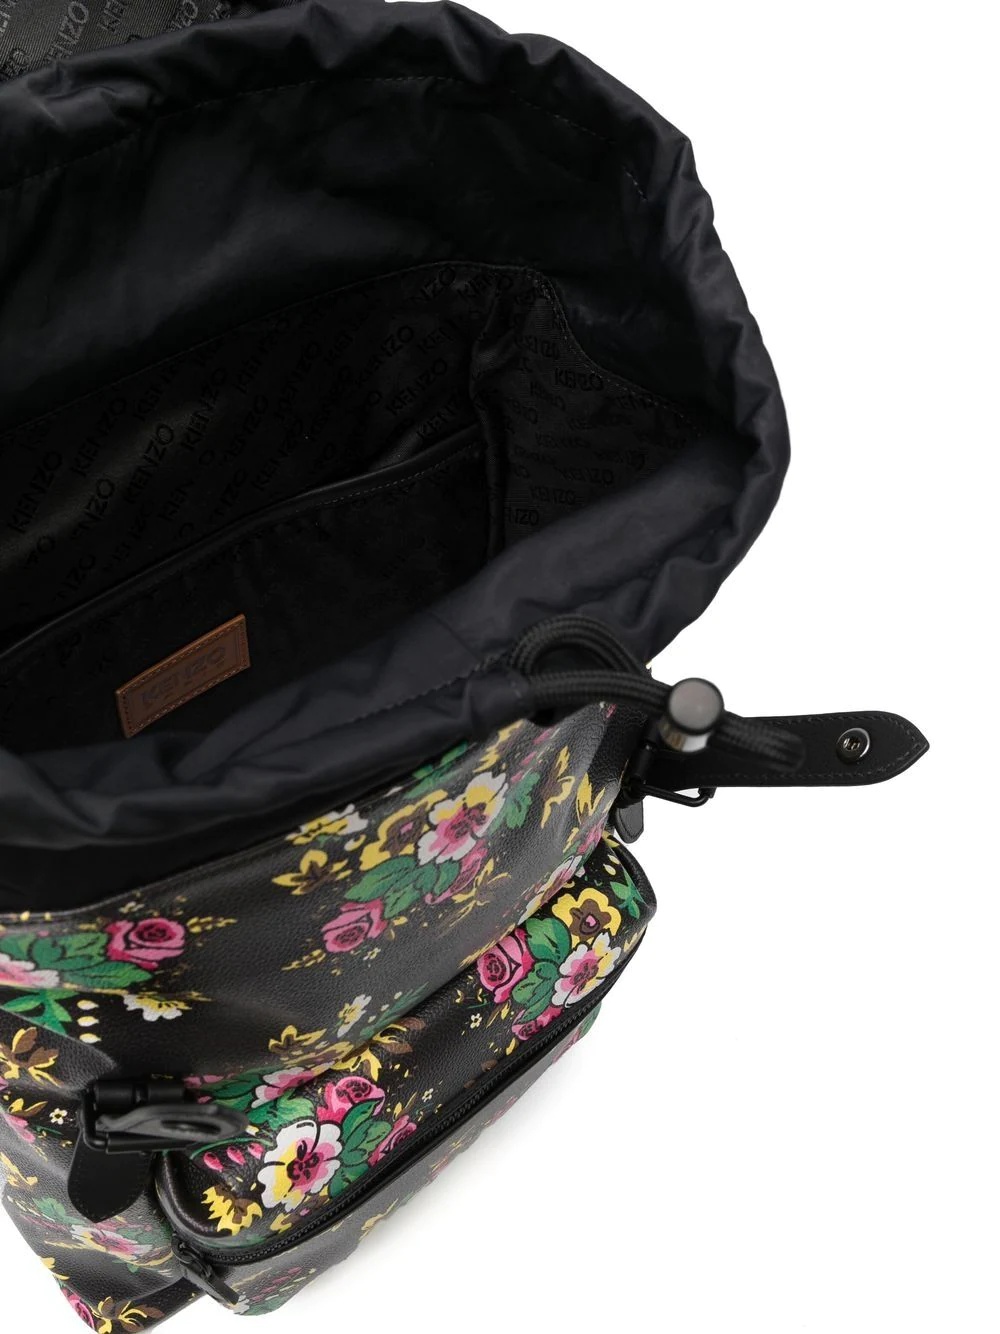 floral foldover backpack - 5